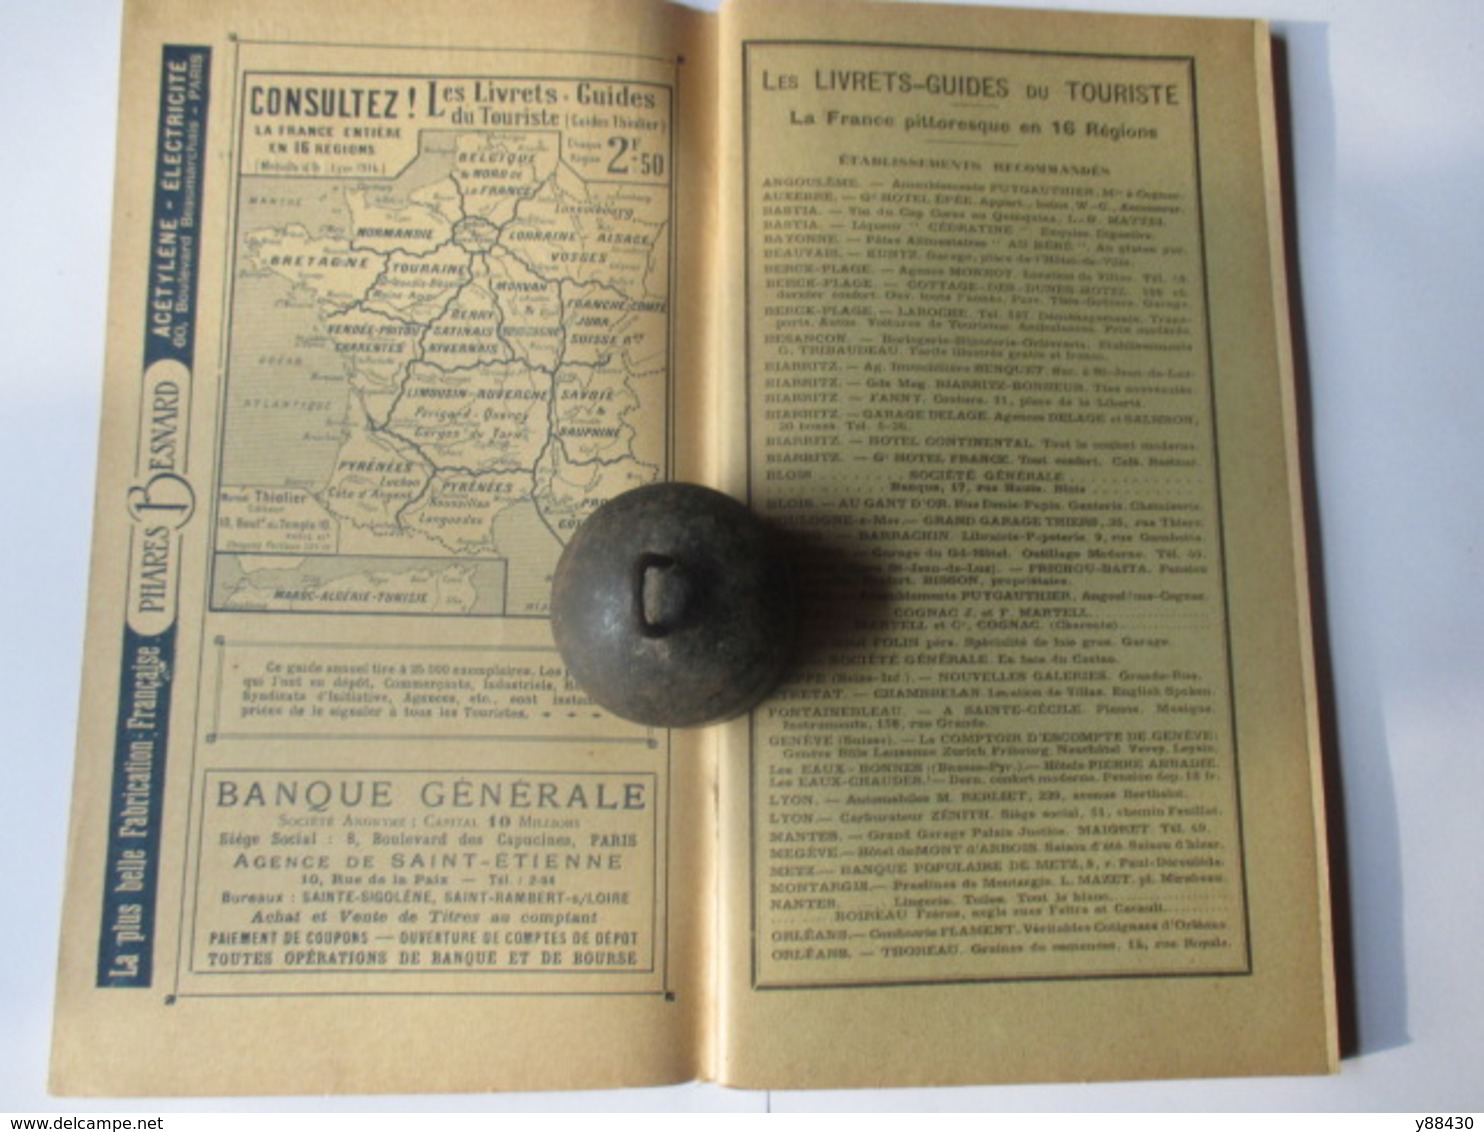 Livret Guides Du Touriste THIOLIER De 1923 - AUVERGNE / LIMOUSIN - Périgord Quercy Gorges Du Tarn -100 Pages - 20 Photos - Dépliants Touristiques